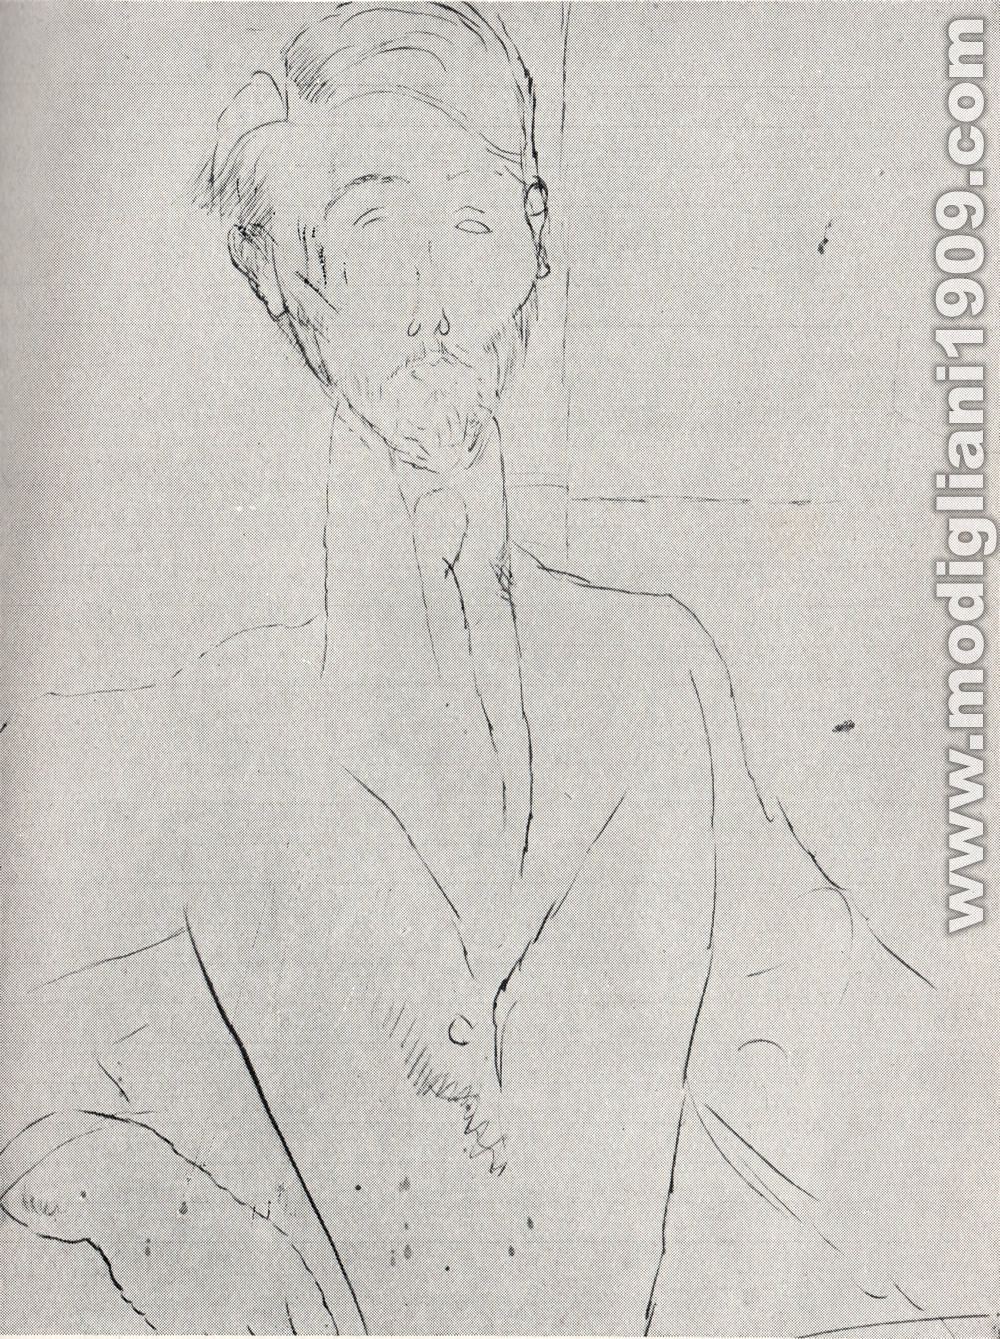 Amedeo Modigliani - Ritratto di Zborowski - 1918 - Parigi. Collezione Zborowski